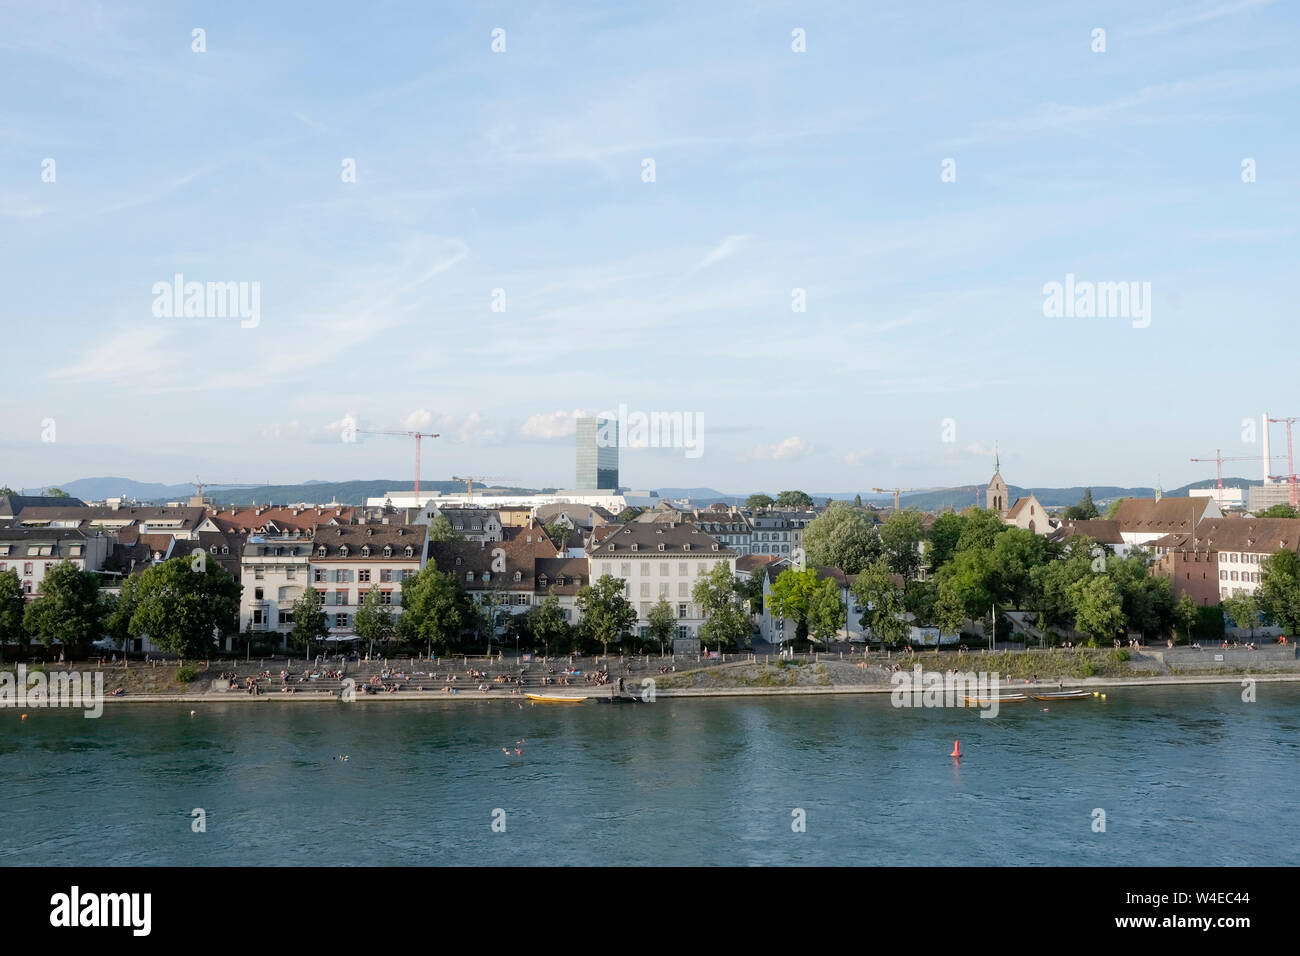 Une vue générale de Bâle à partir de la terrasse panoramique, Suisse Pfalz Banque D'Images